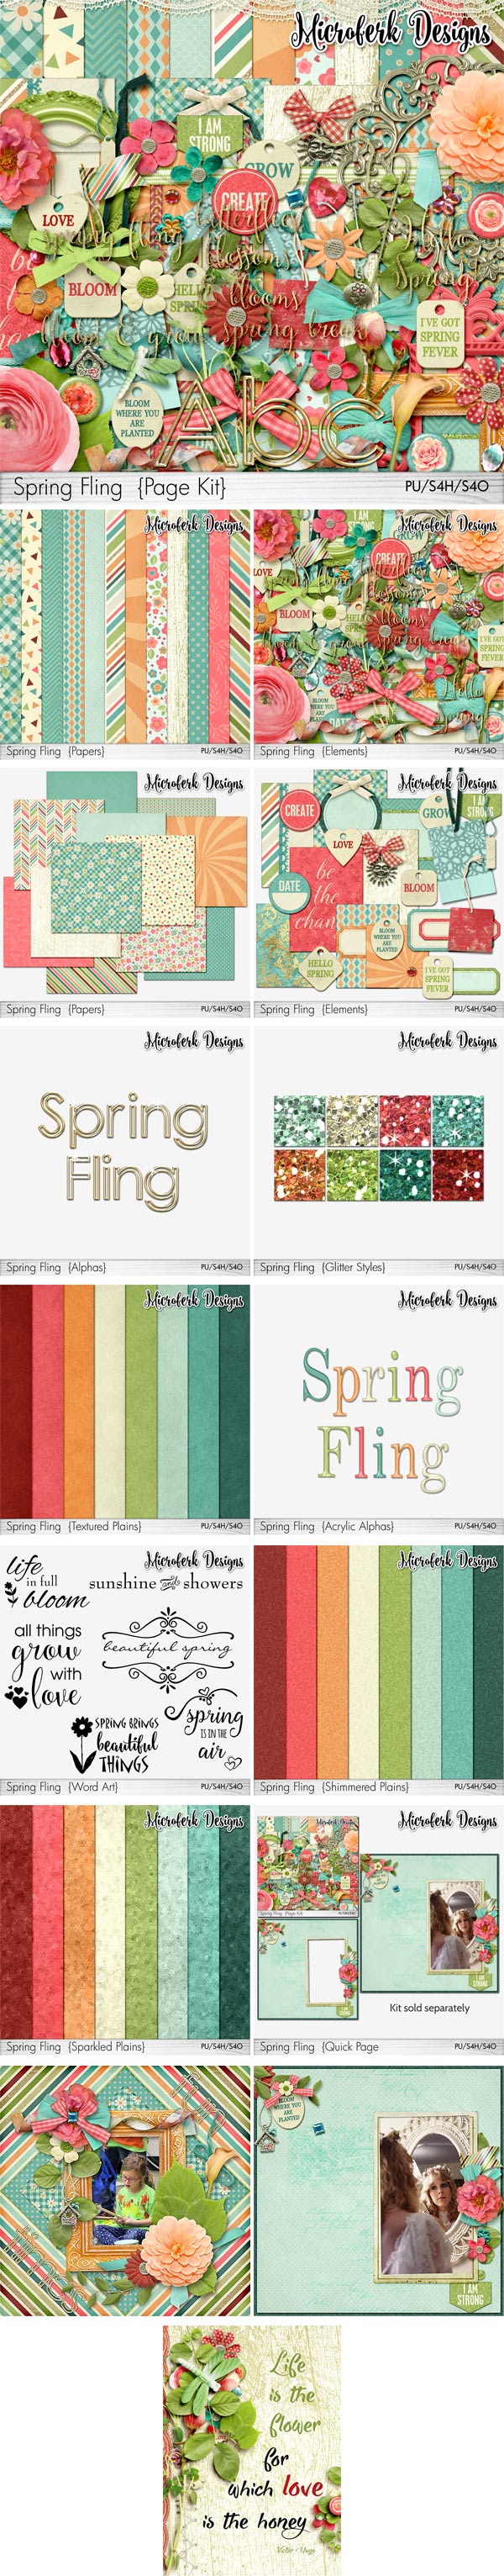 Spring Fling Page Kit